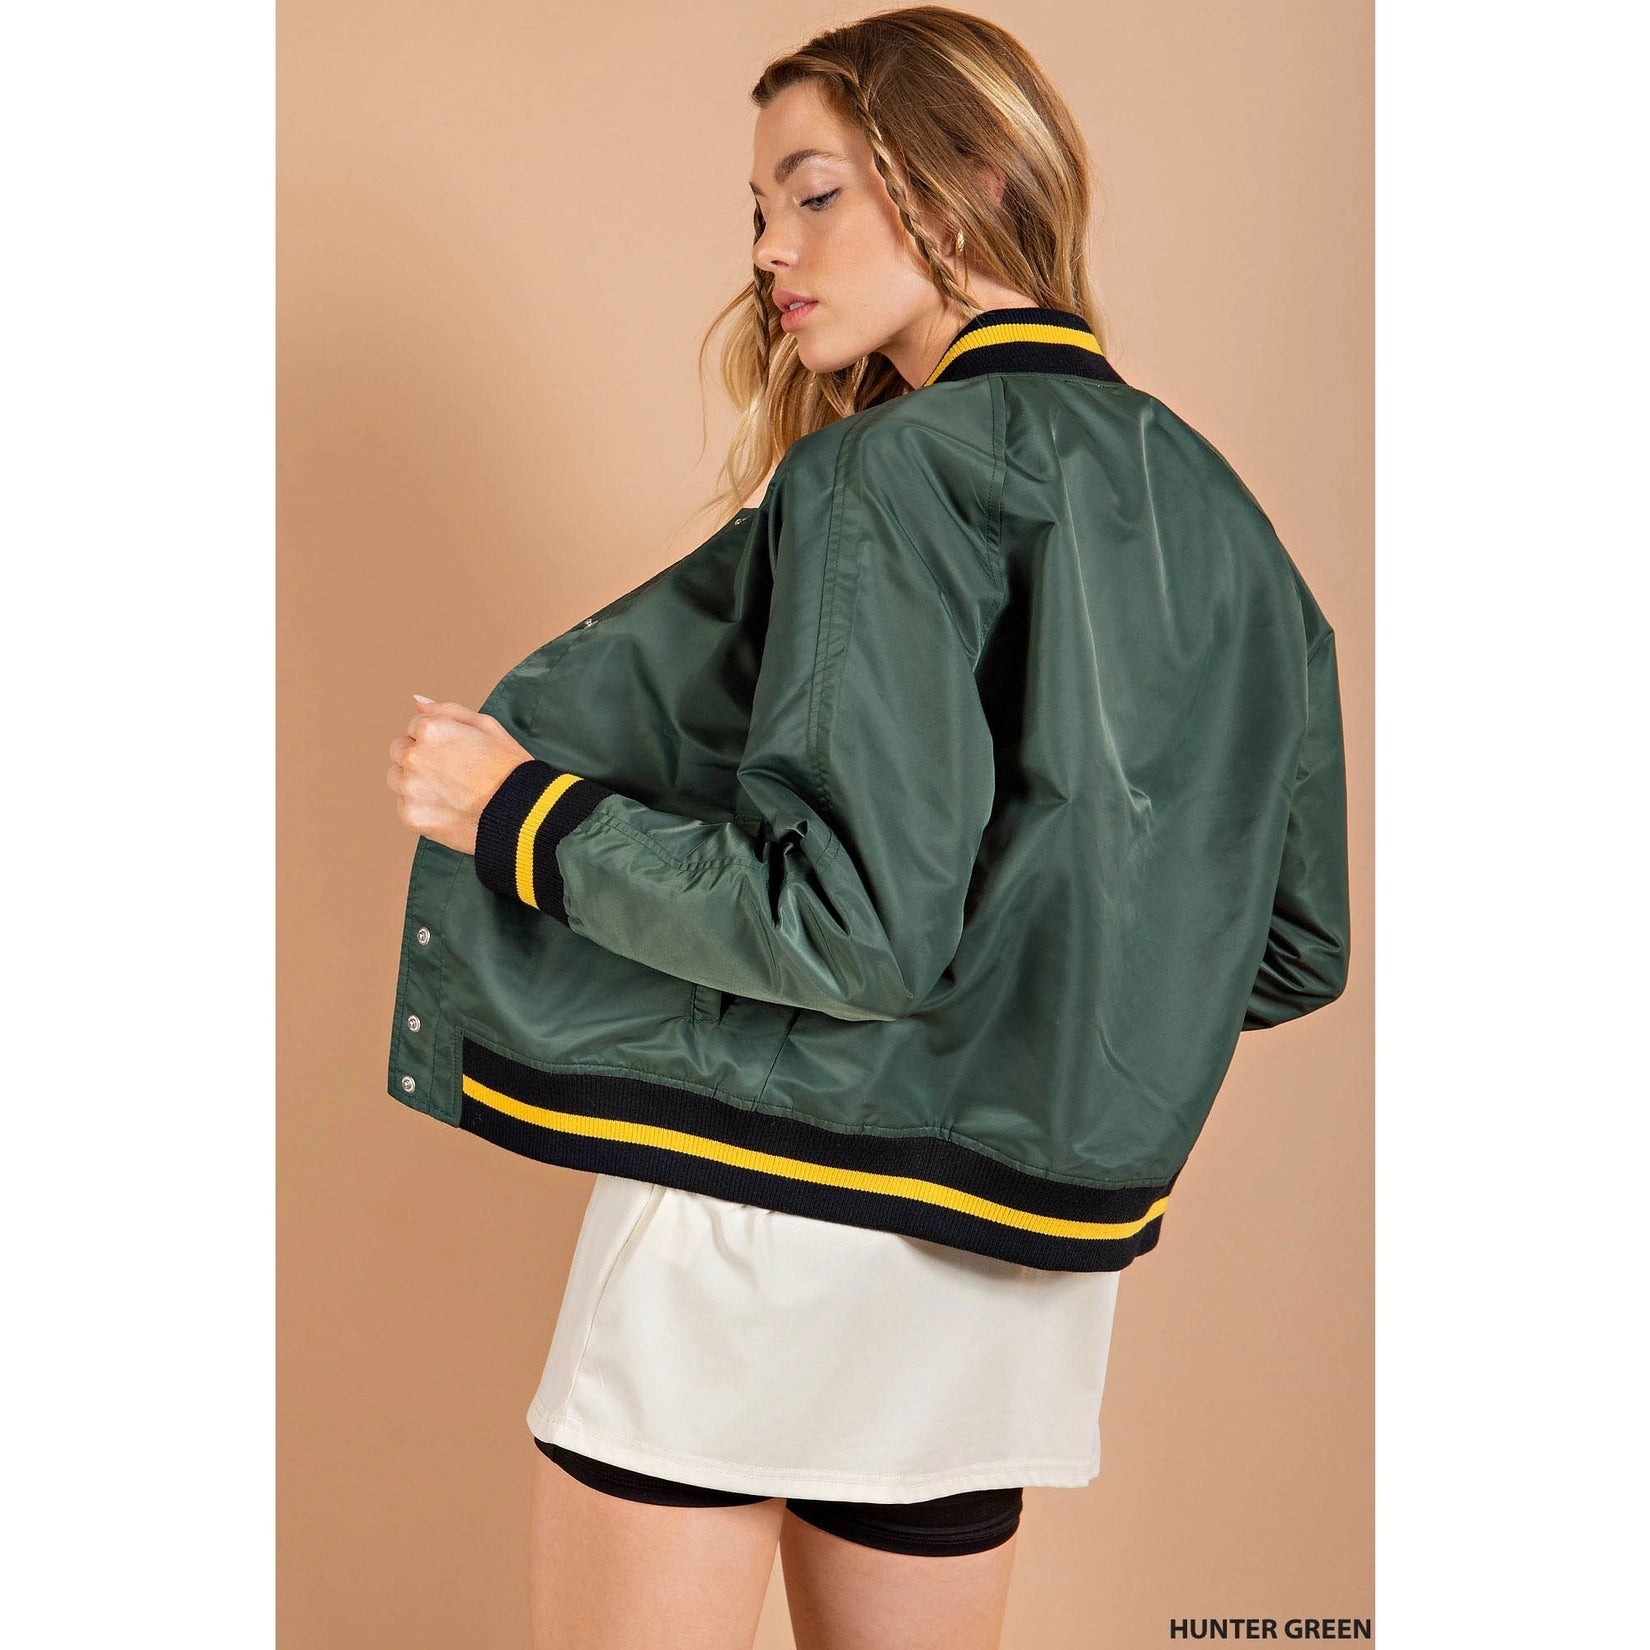 Amazon.com: WYLZZZNB09 Baseball Jacket Men PU Leather Varsity Jackets  Vintage Loose Causal Coat Couple Green Jacket : Clothing, Shoes & Jewelry